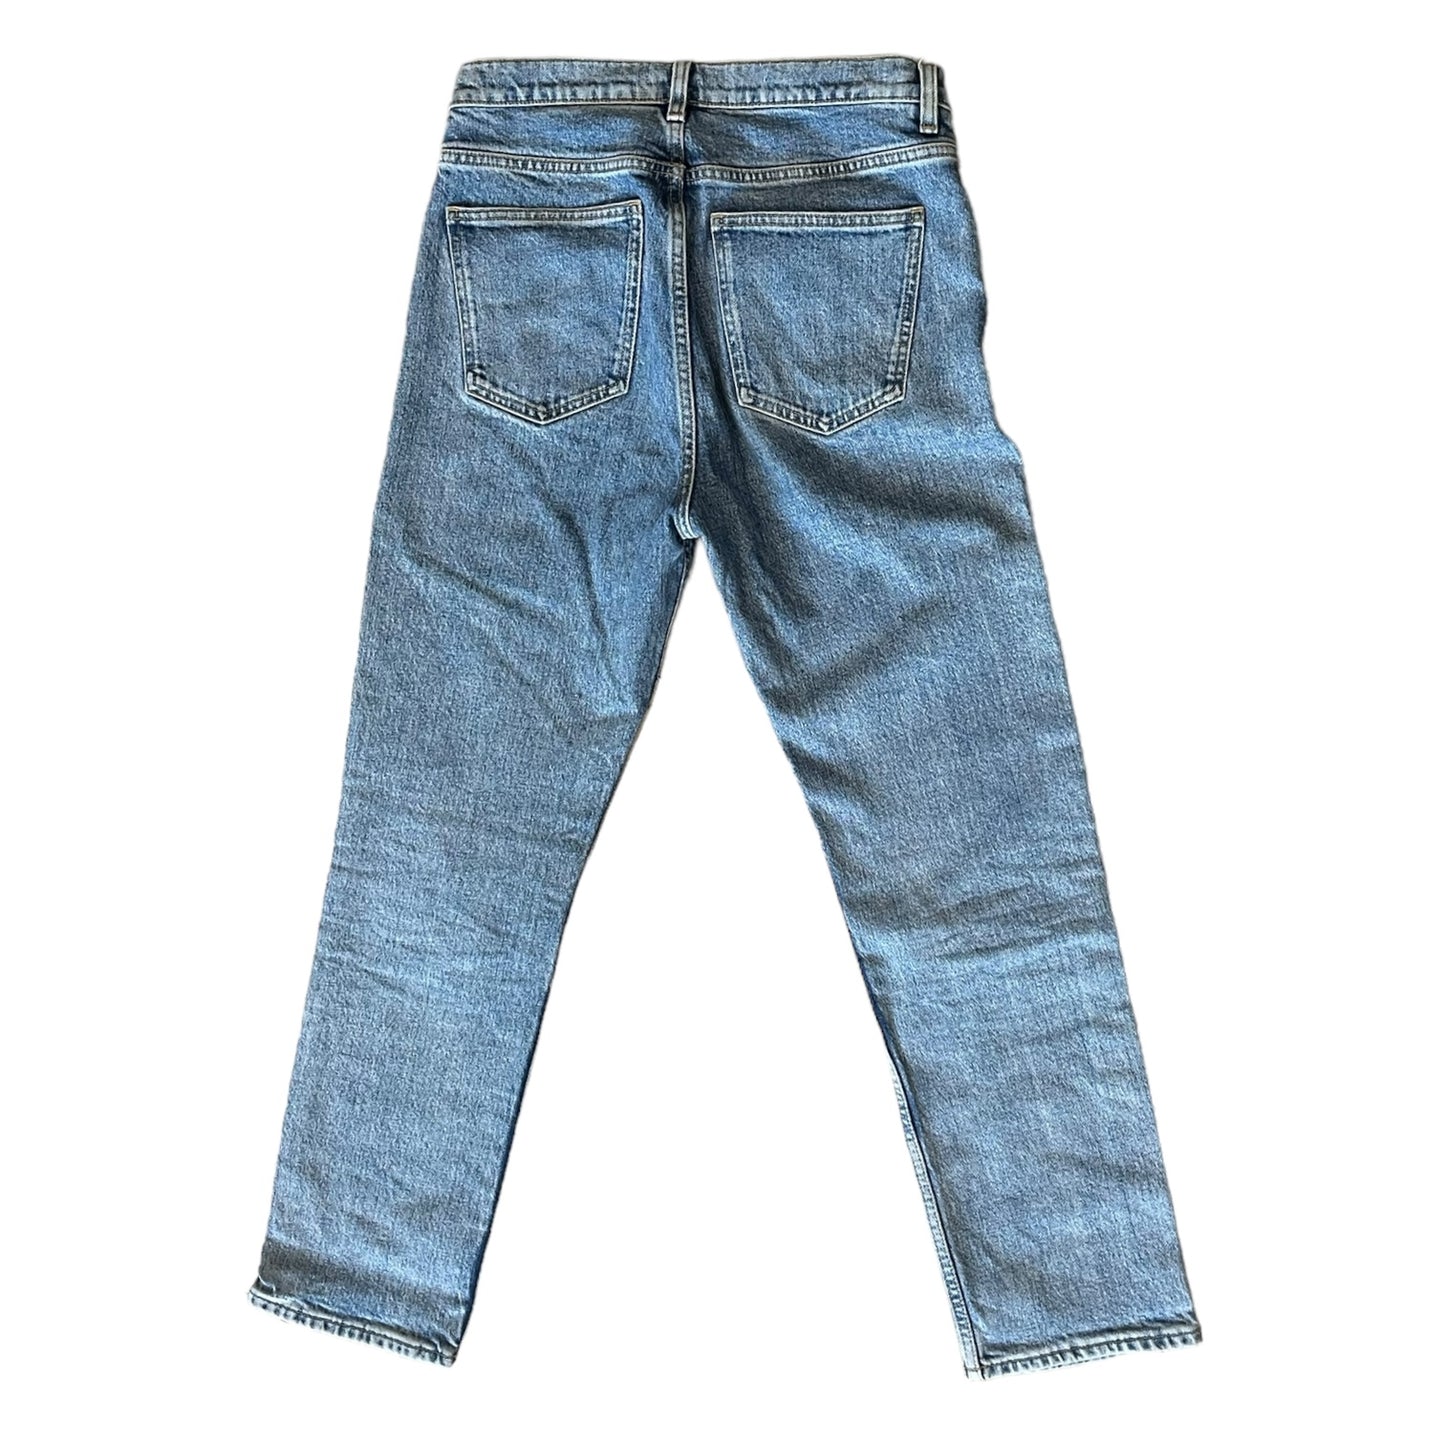 Arket Light Blue Straight Leg Jeans - 10